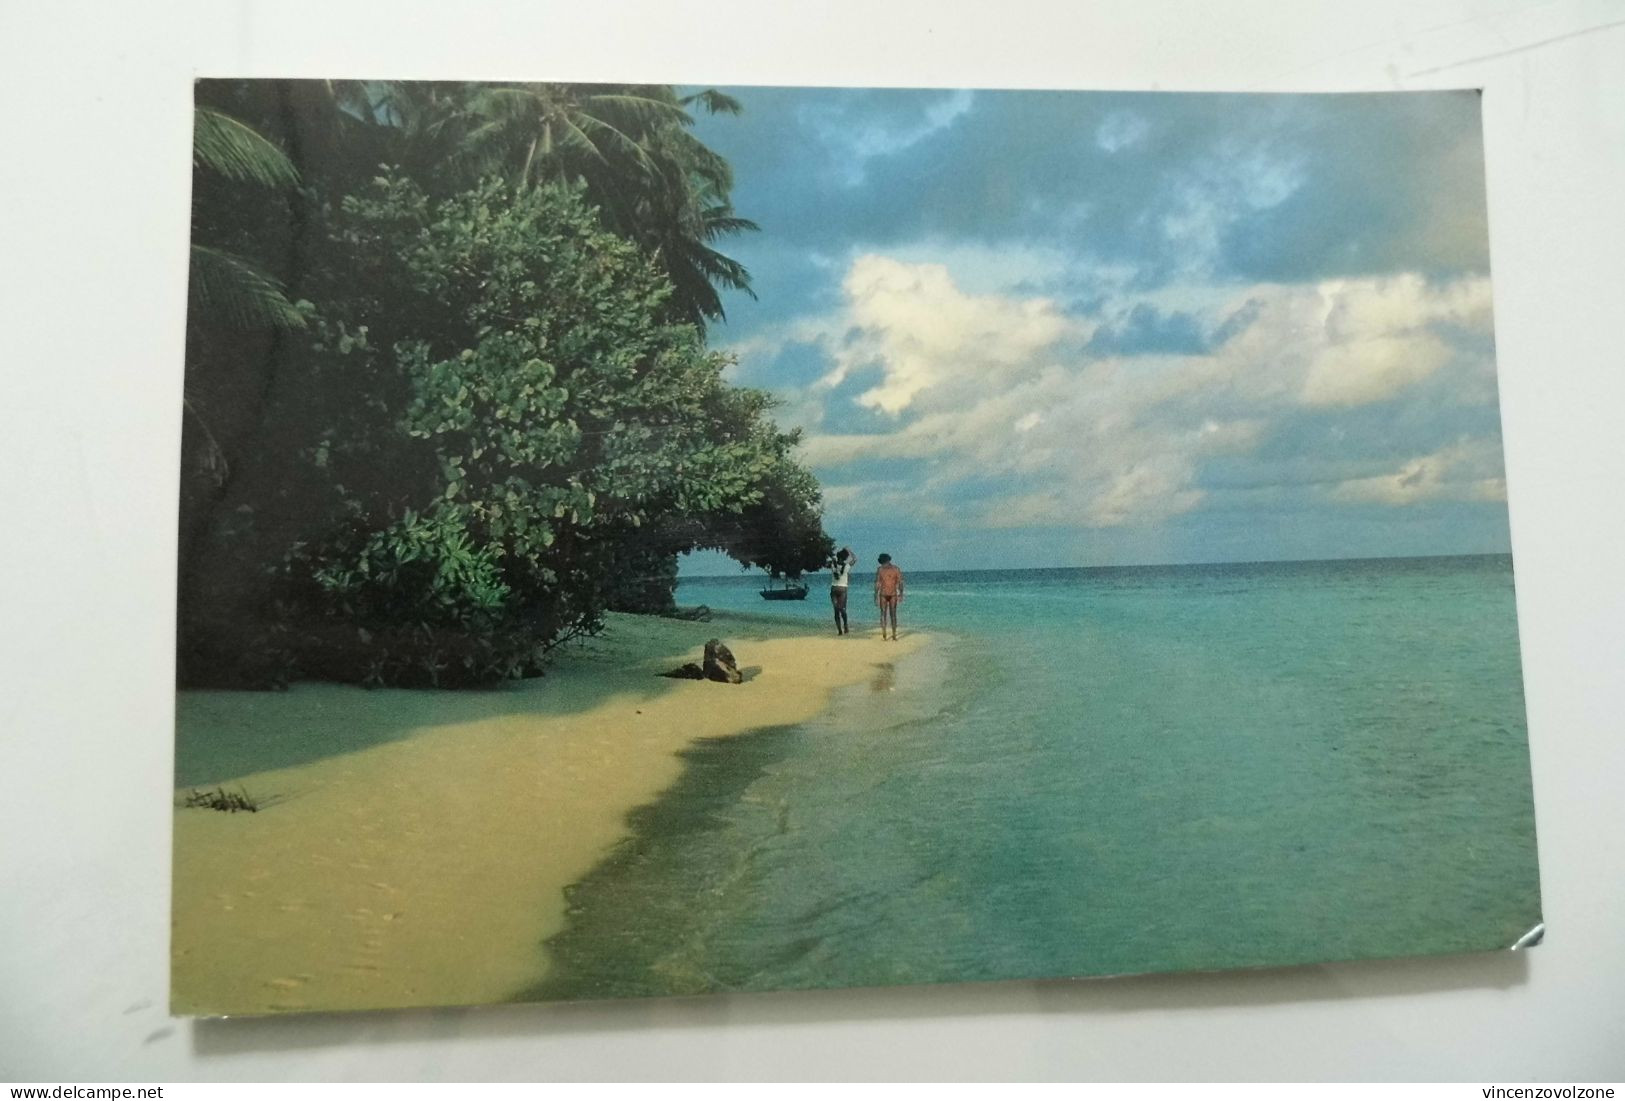 Cartolina Viaggiata  "MALDIVES" 1988 - Maldive